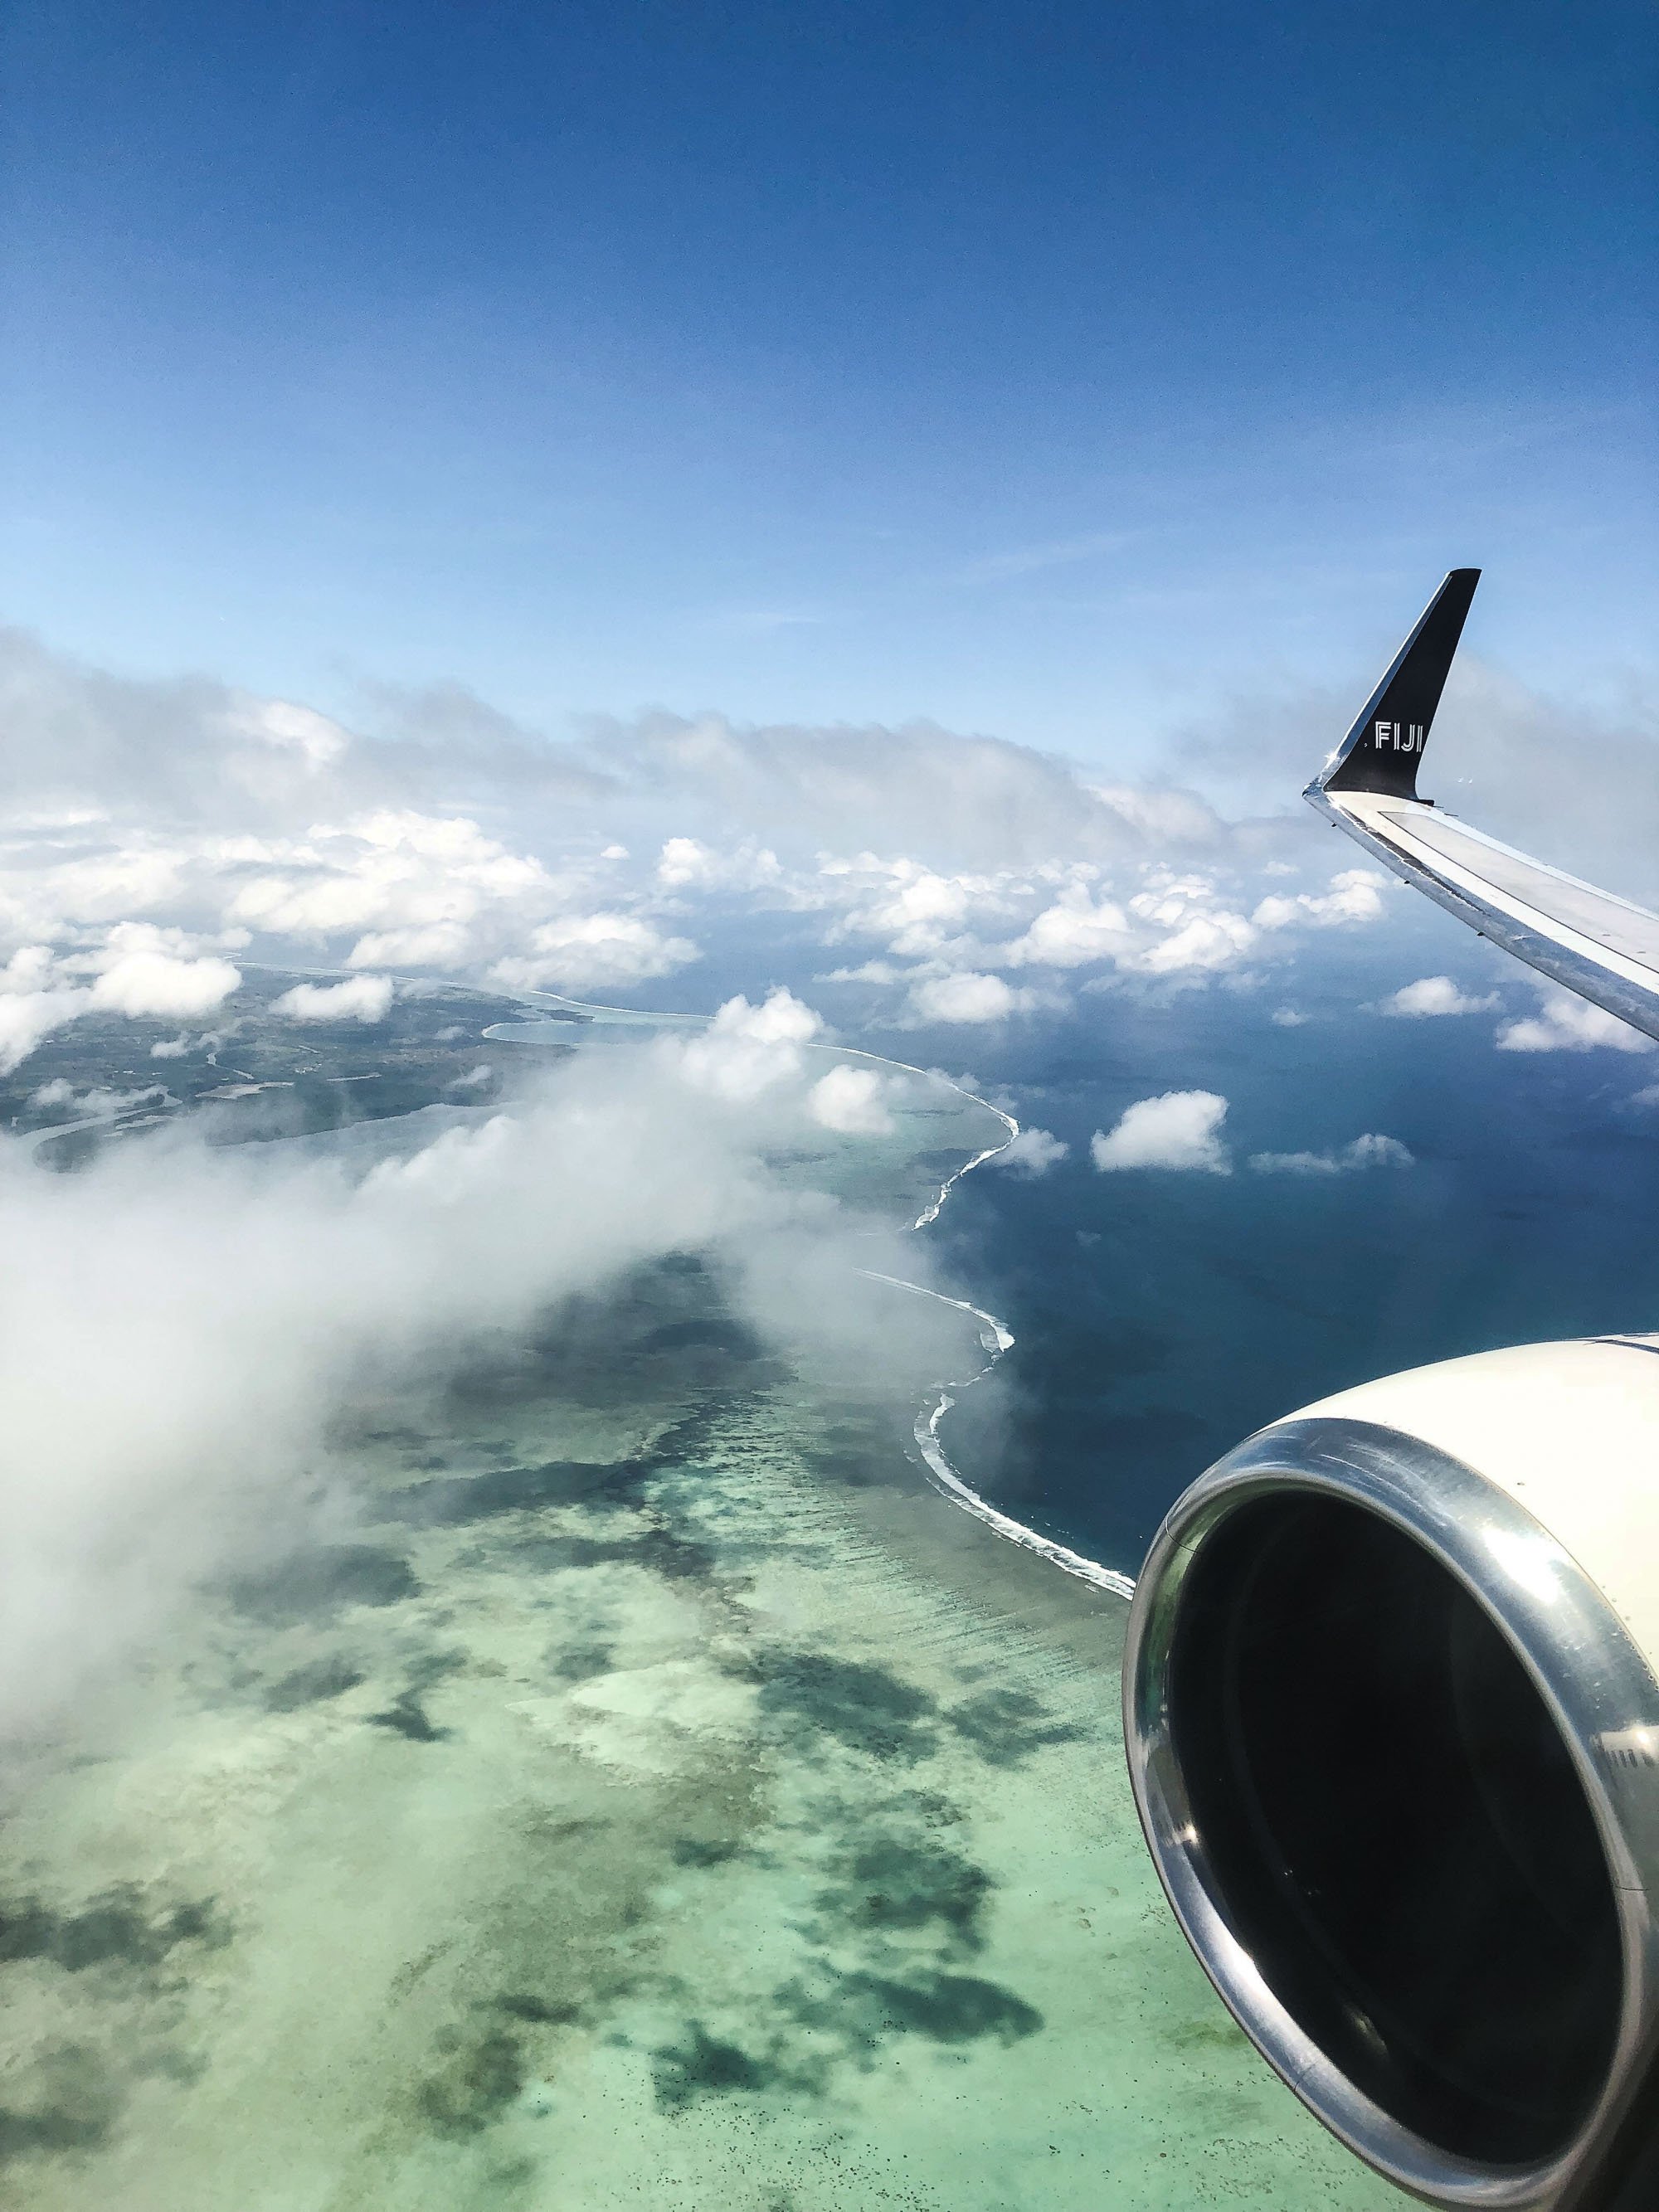 Fiji Islands – Honeymoon at its best | Ein Reisebericht